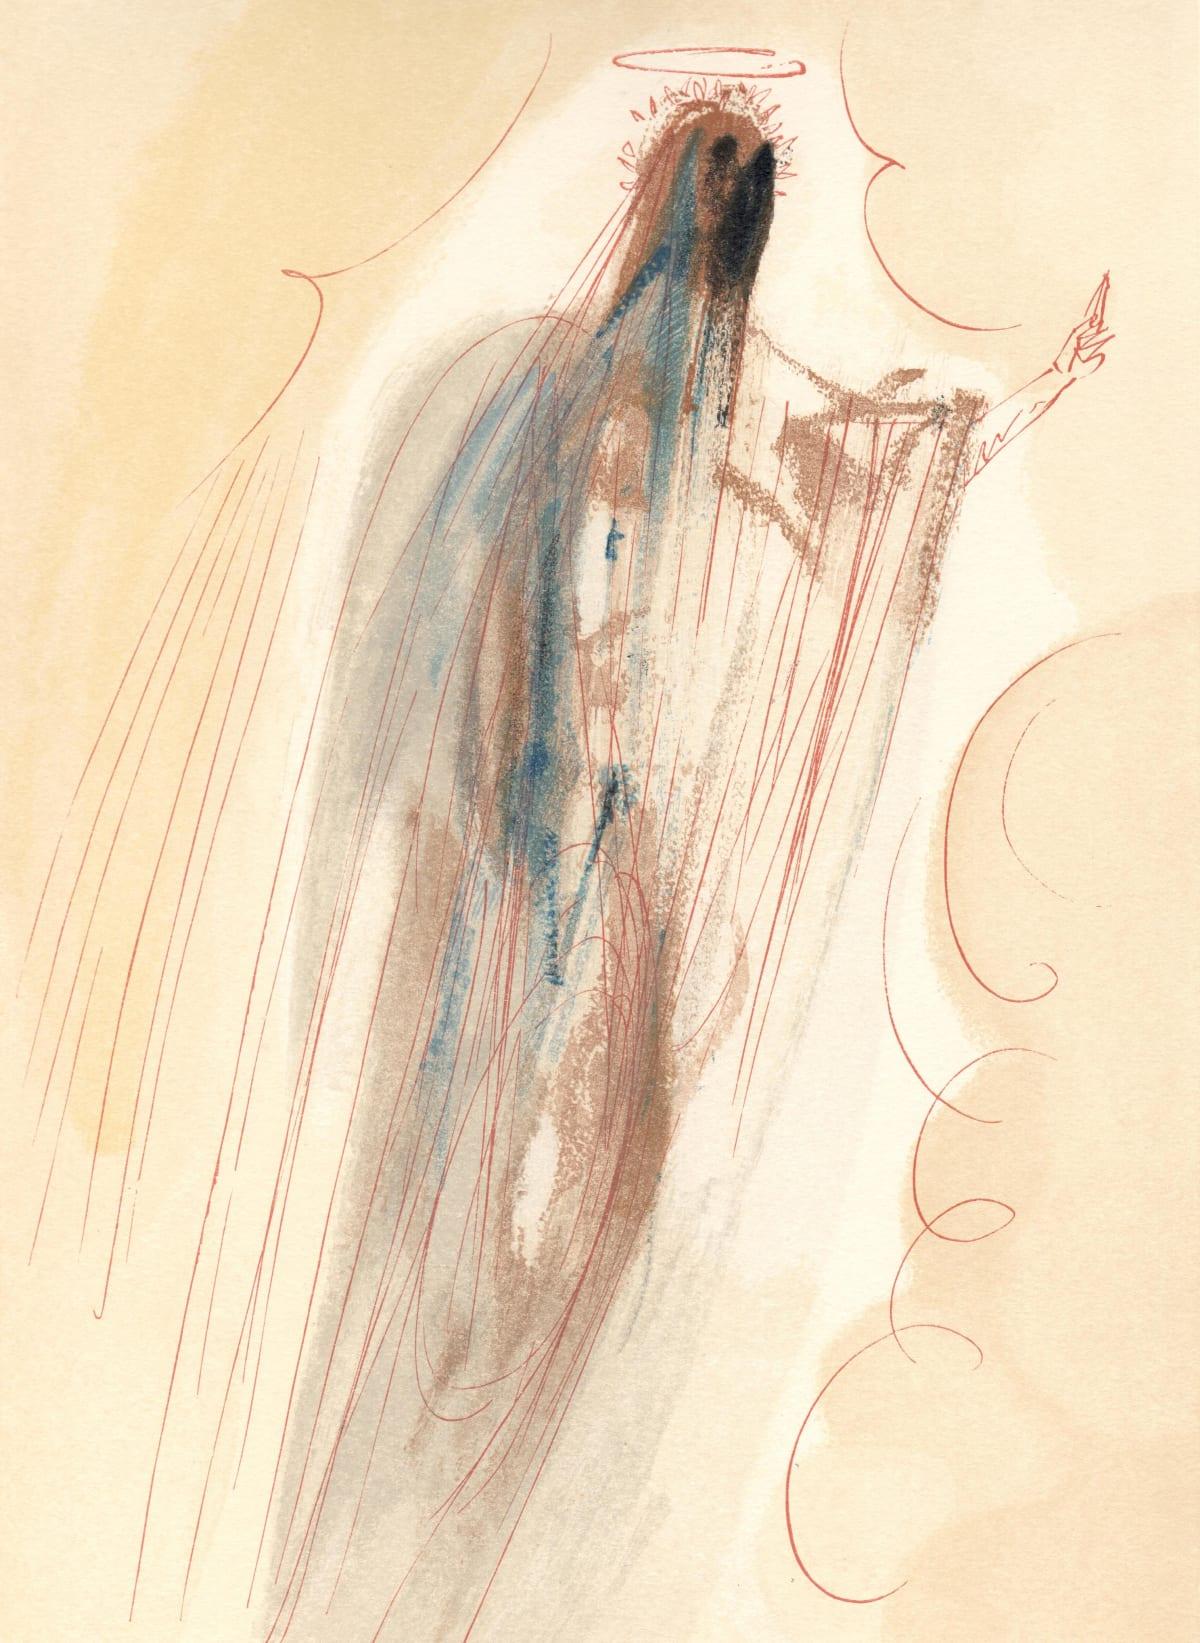 Künstler: Salvador Dali (1904-1989)
Jahr: 1963
Medium: Holzstich in Farben auf Rives BFK Papier
Beschriftung: Unsigniert und nicht nummeriert, wie ausgegeben
Auflage: 4765 auf Französisch; 3188 auf Italienisch, plus Probedrucke
Katalog Raisonne